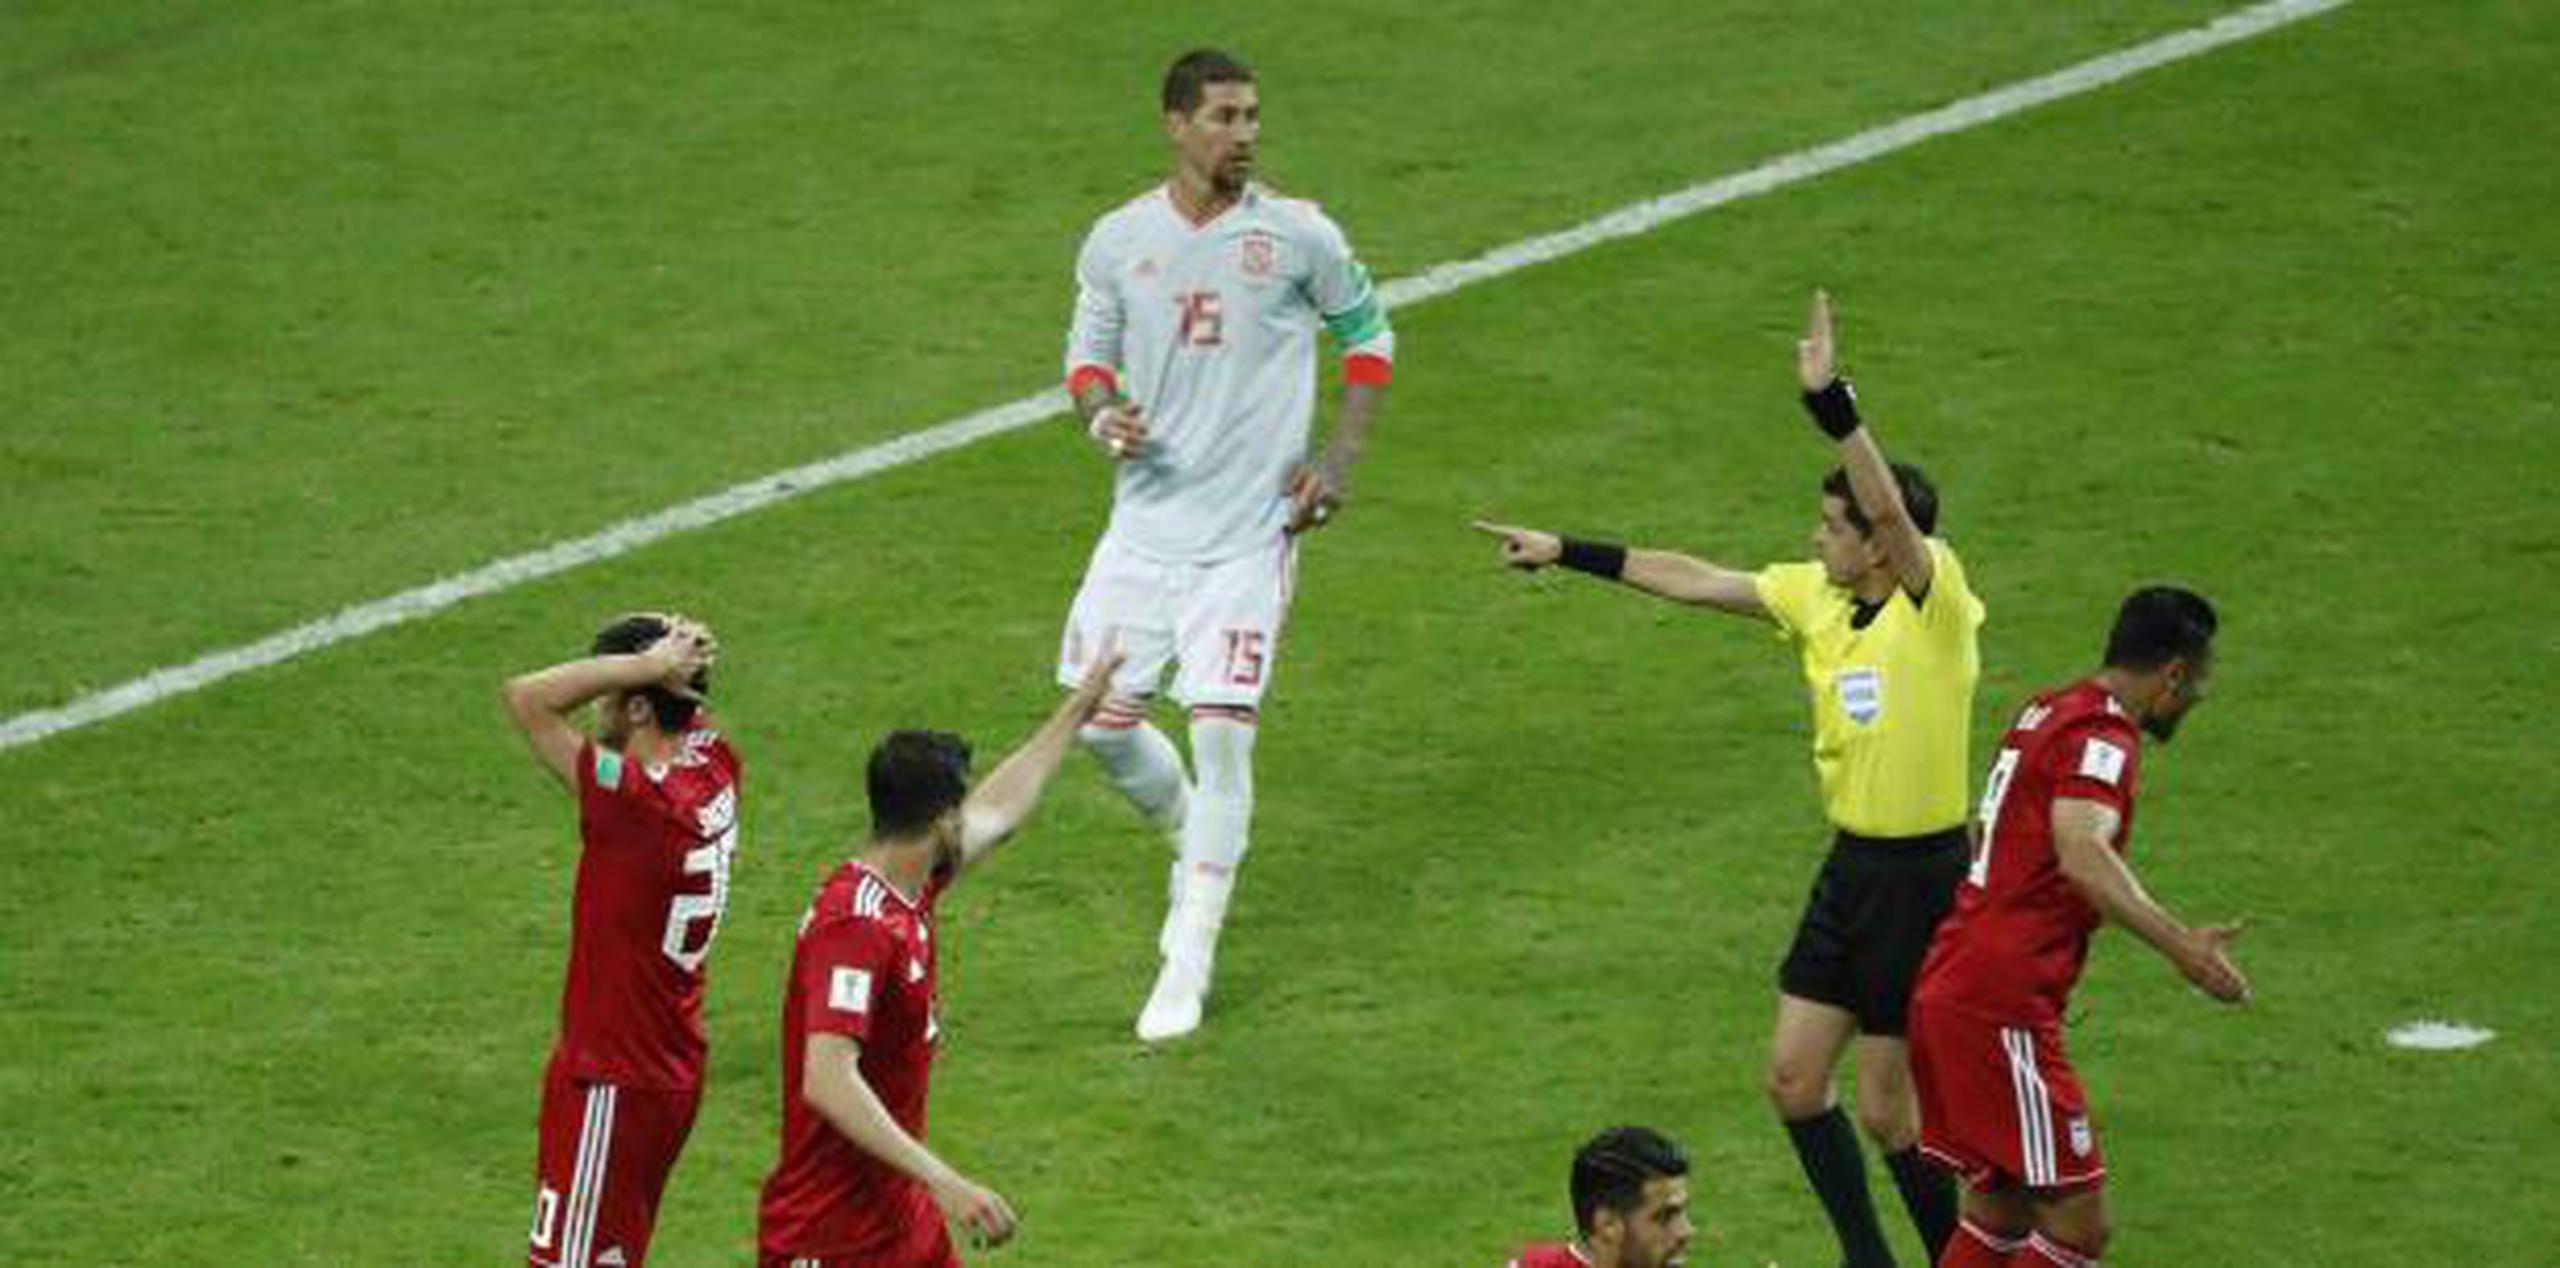 Jugadores de la selección de Irán proestan después de que el árbitro uruguayo Andrés Cunha les invalida un gol en el partido contra España, el miércoles en Kazán, Rusia. (AP/ Eugene Hoshiko)